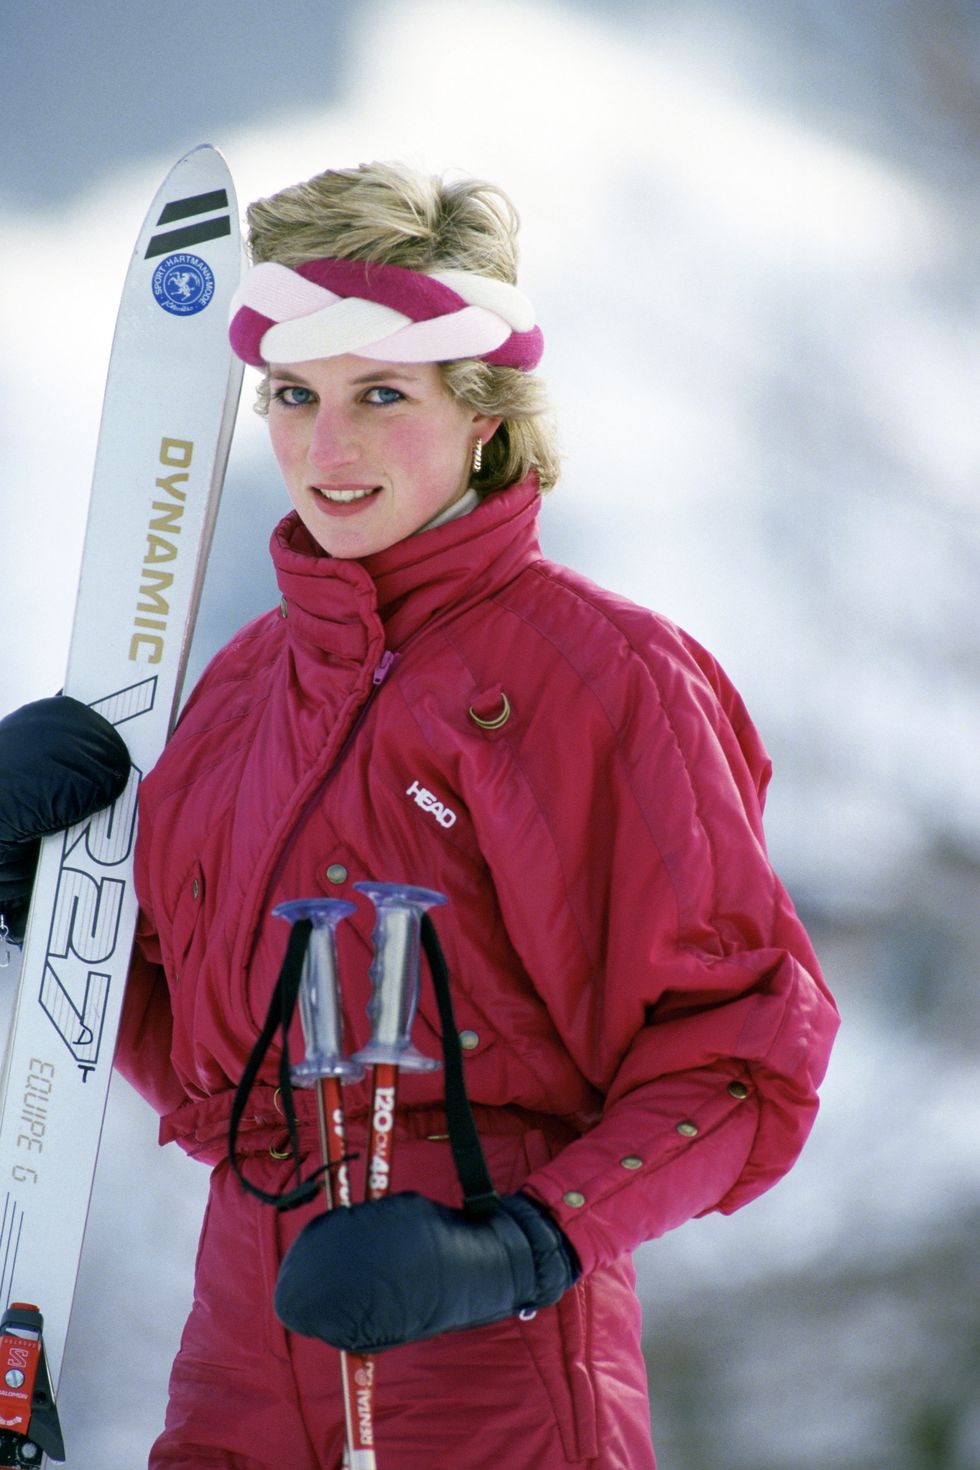 لأميرة الراحلة ديانا والتي شوهدت أثناء تزلجها على الجليد في منتجع كلوسترز في سويسرا في فبراير 1986